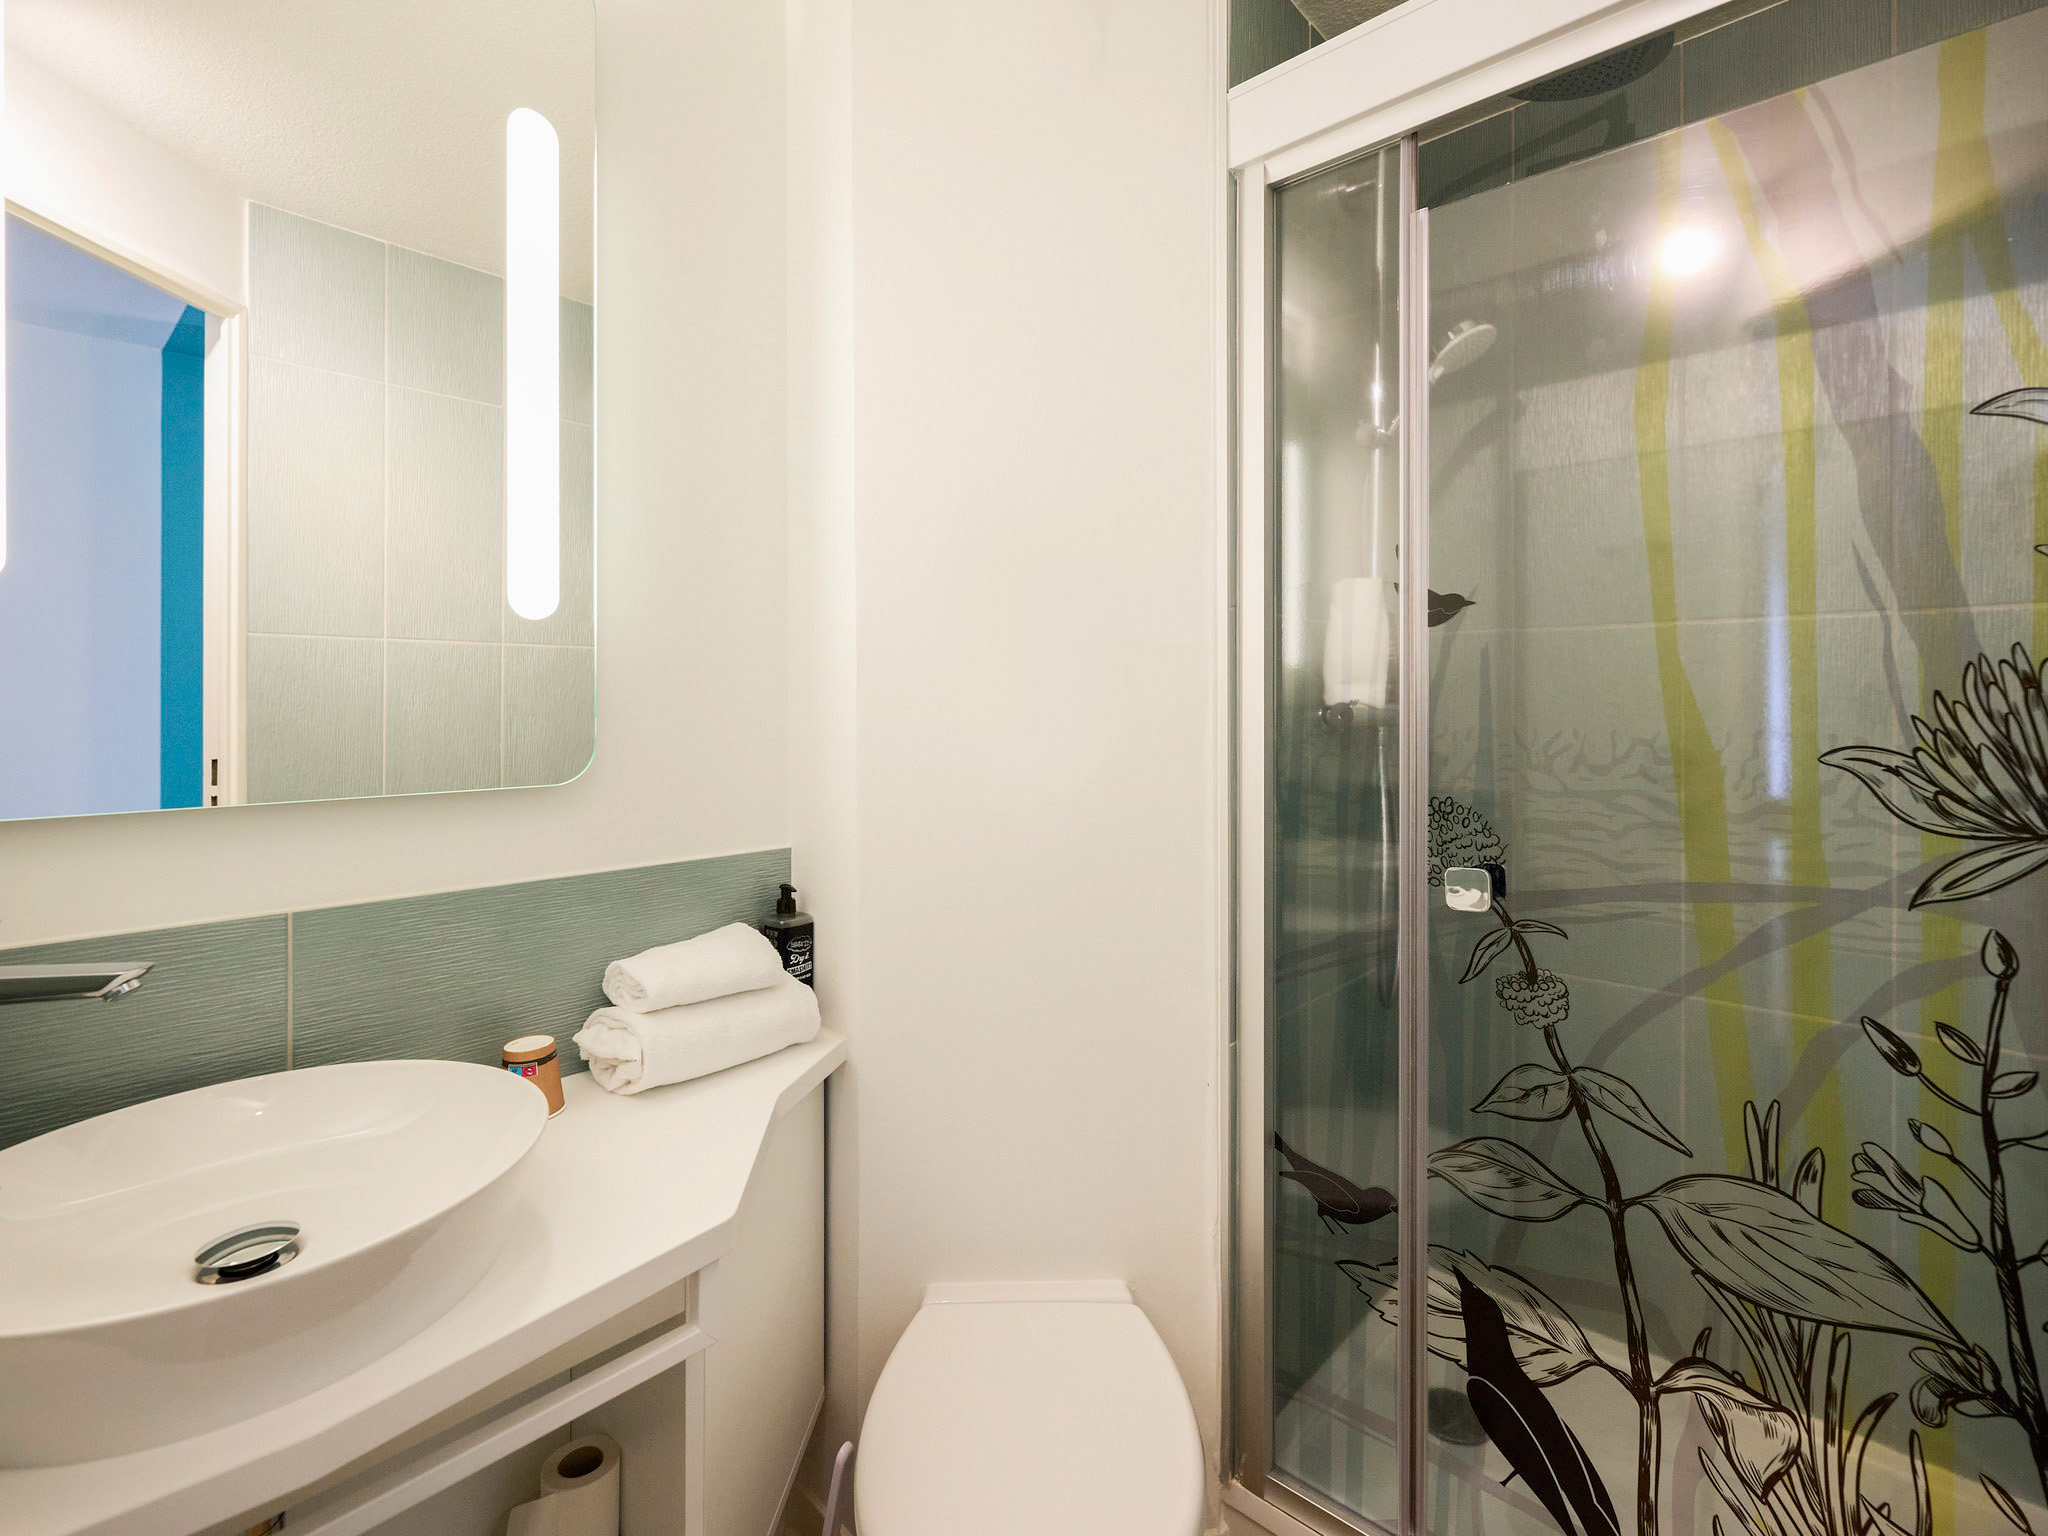 salle-de-bain-naturel-vert-interieur-chambre-hotel-projet-decoration-hotel-ibis-styles-bordeaux